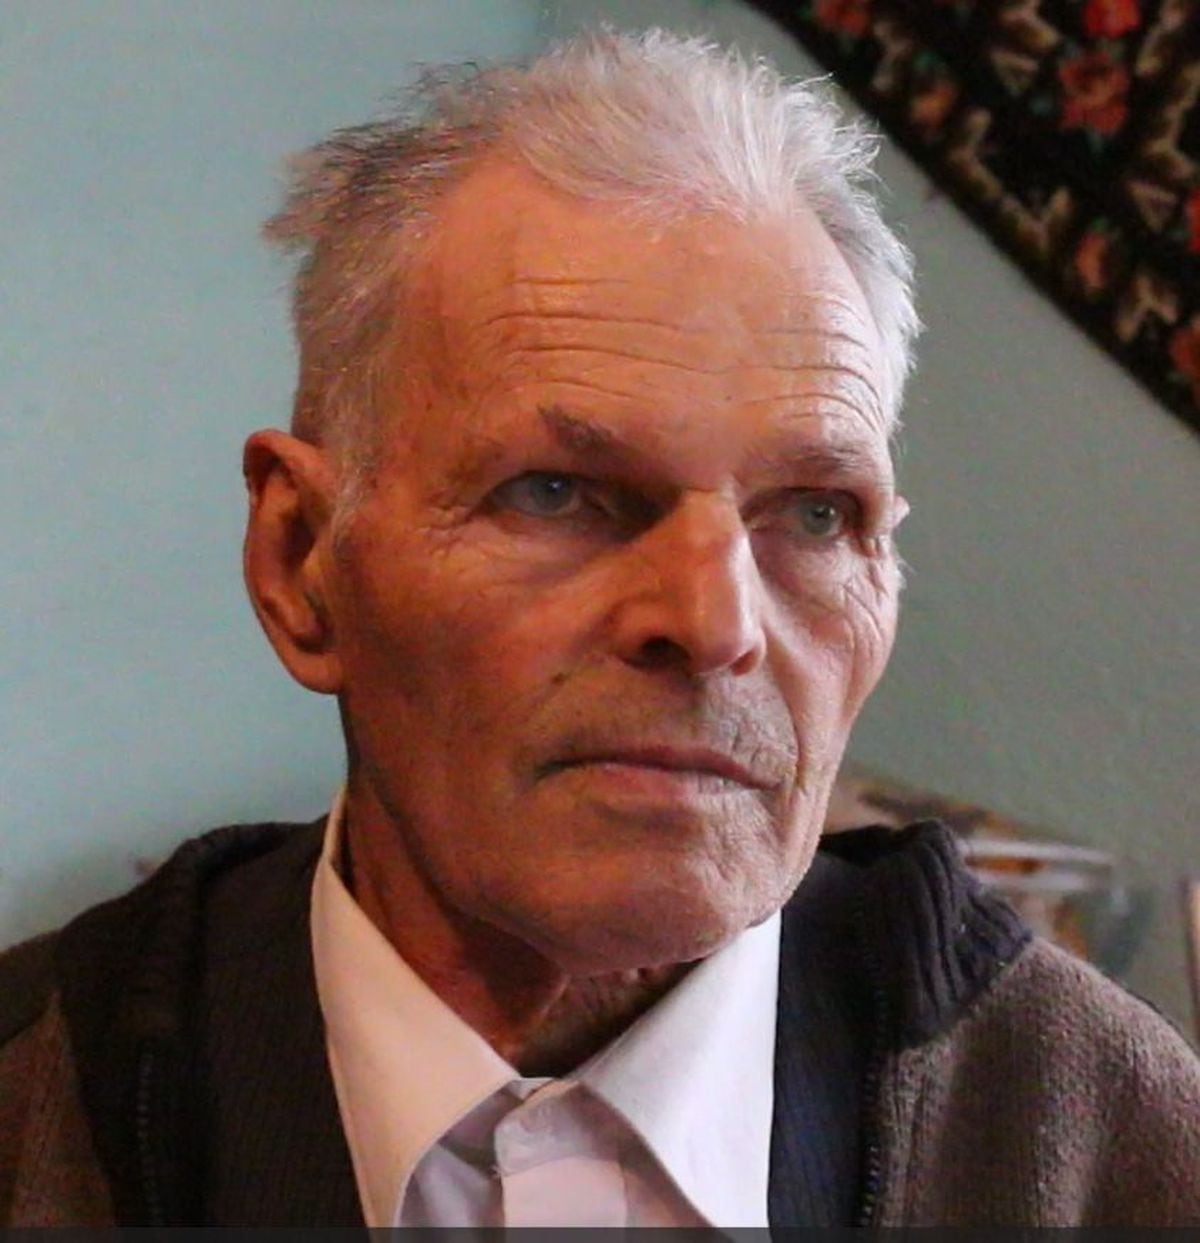 Eugeniu Chirca, the last survivor of Romania's anti-communist resistance, dies at 93